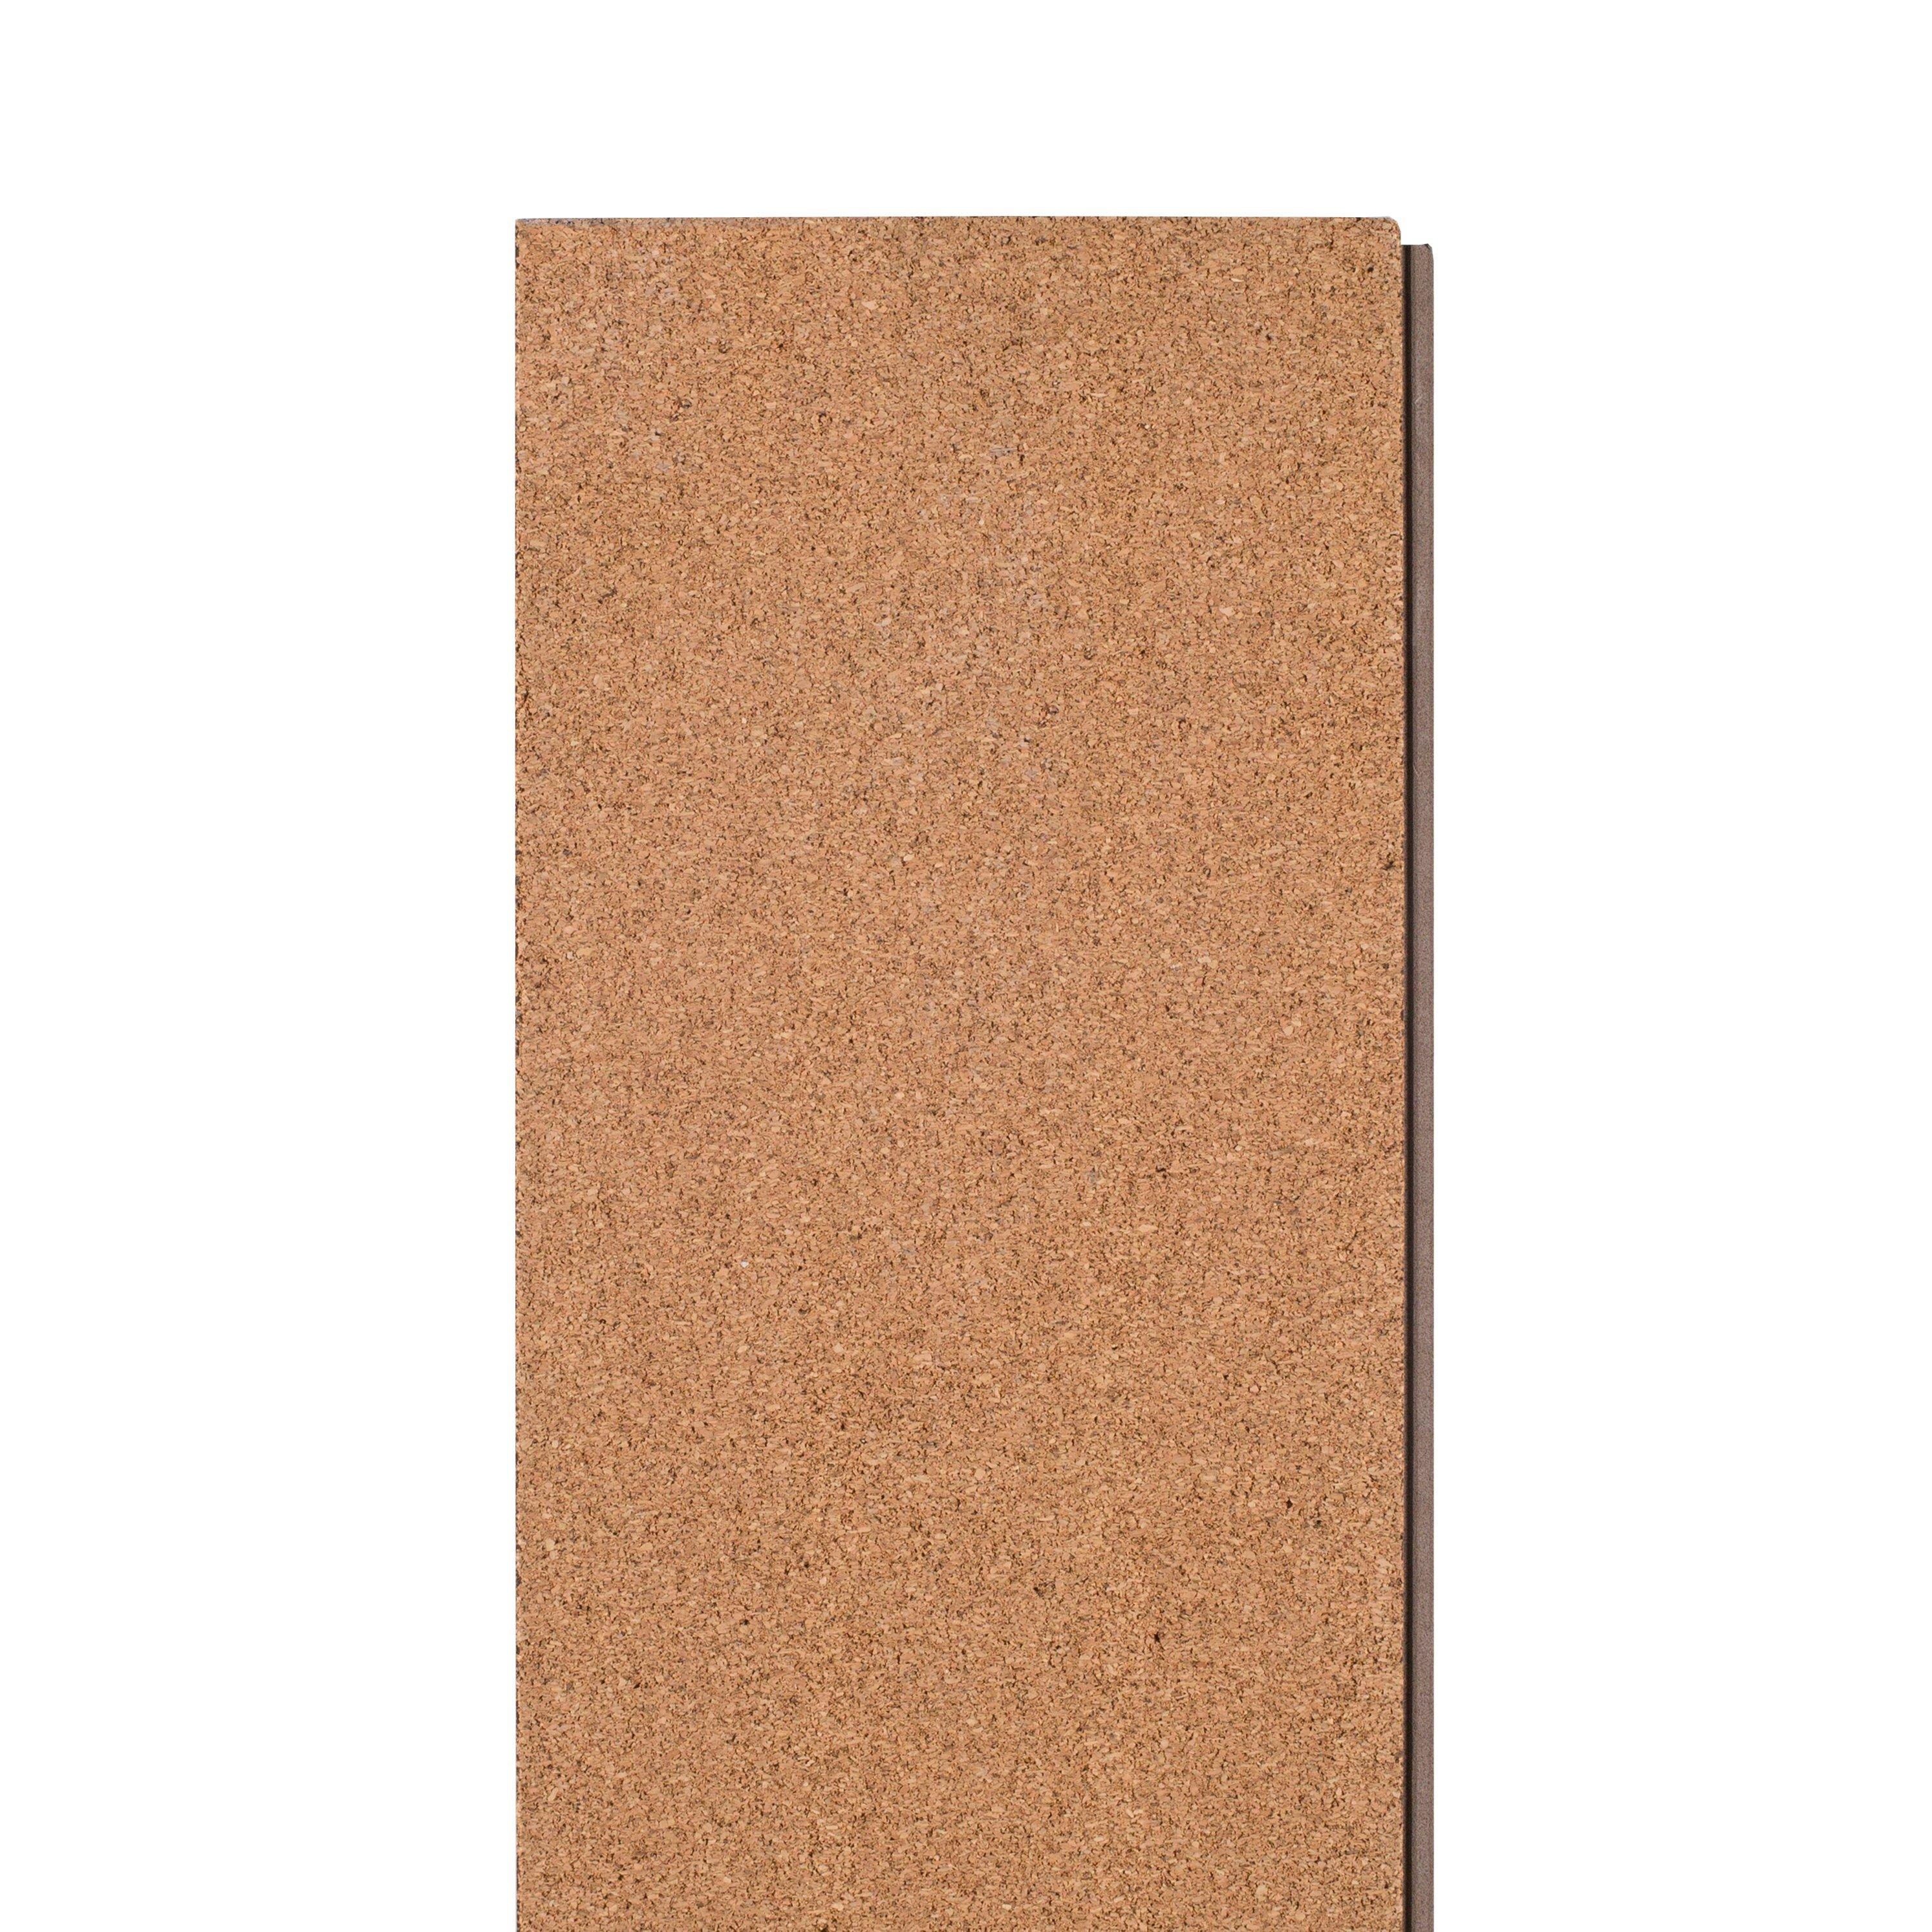 Conway Oak Rigid Core Luxury Vinyl Plank - Cork Back